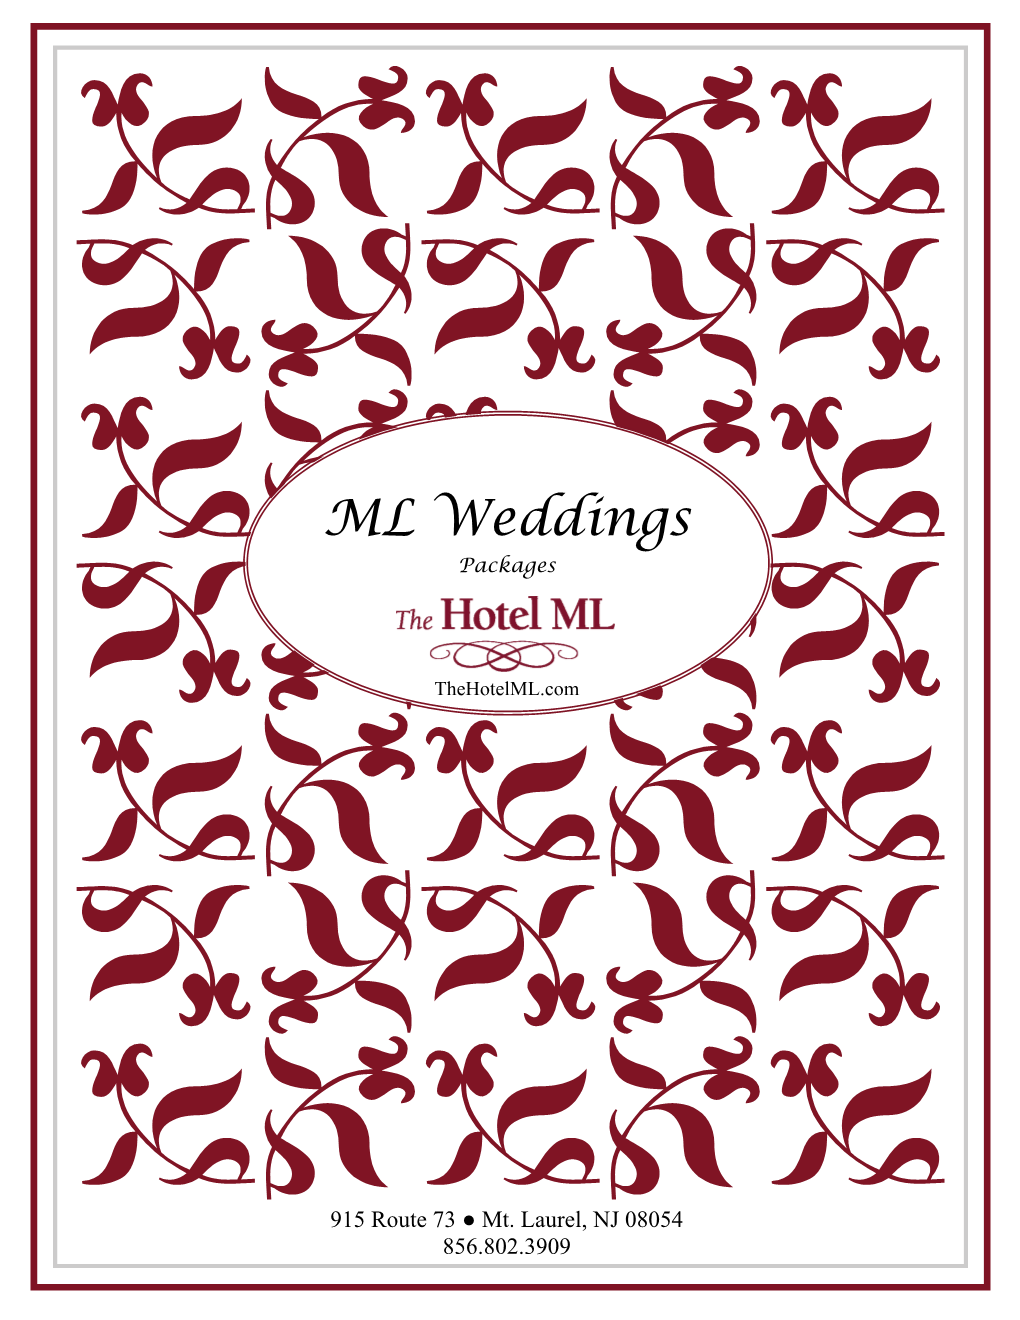 ML Weddings Packages